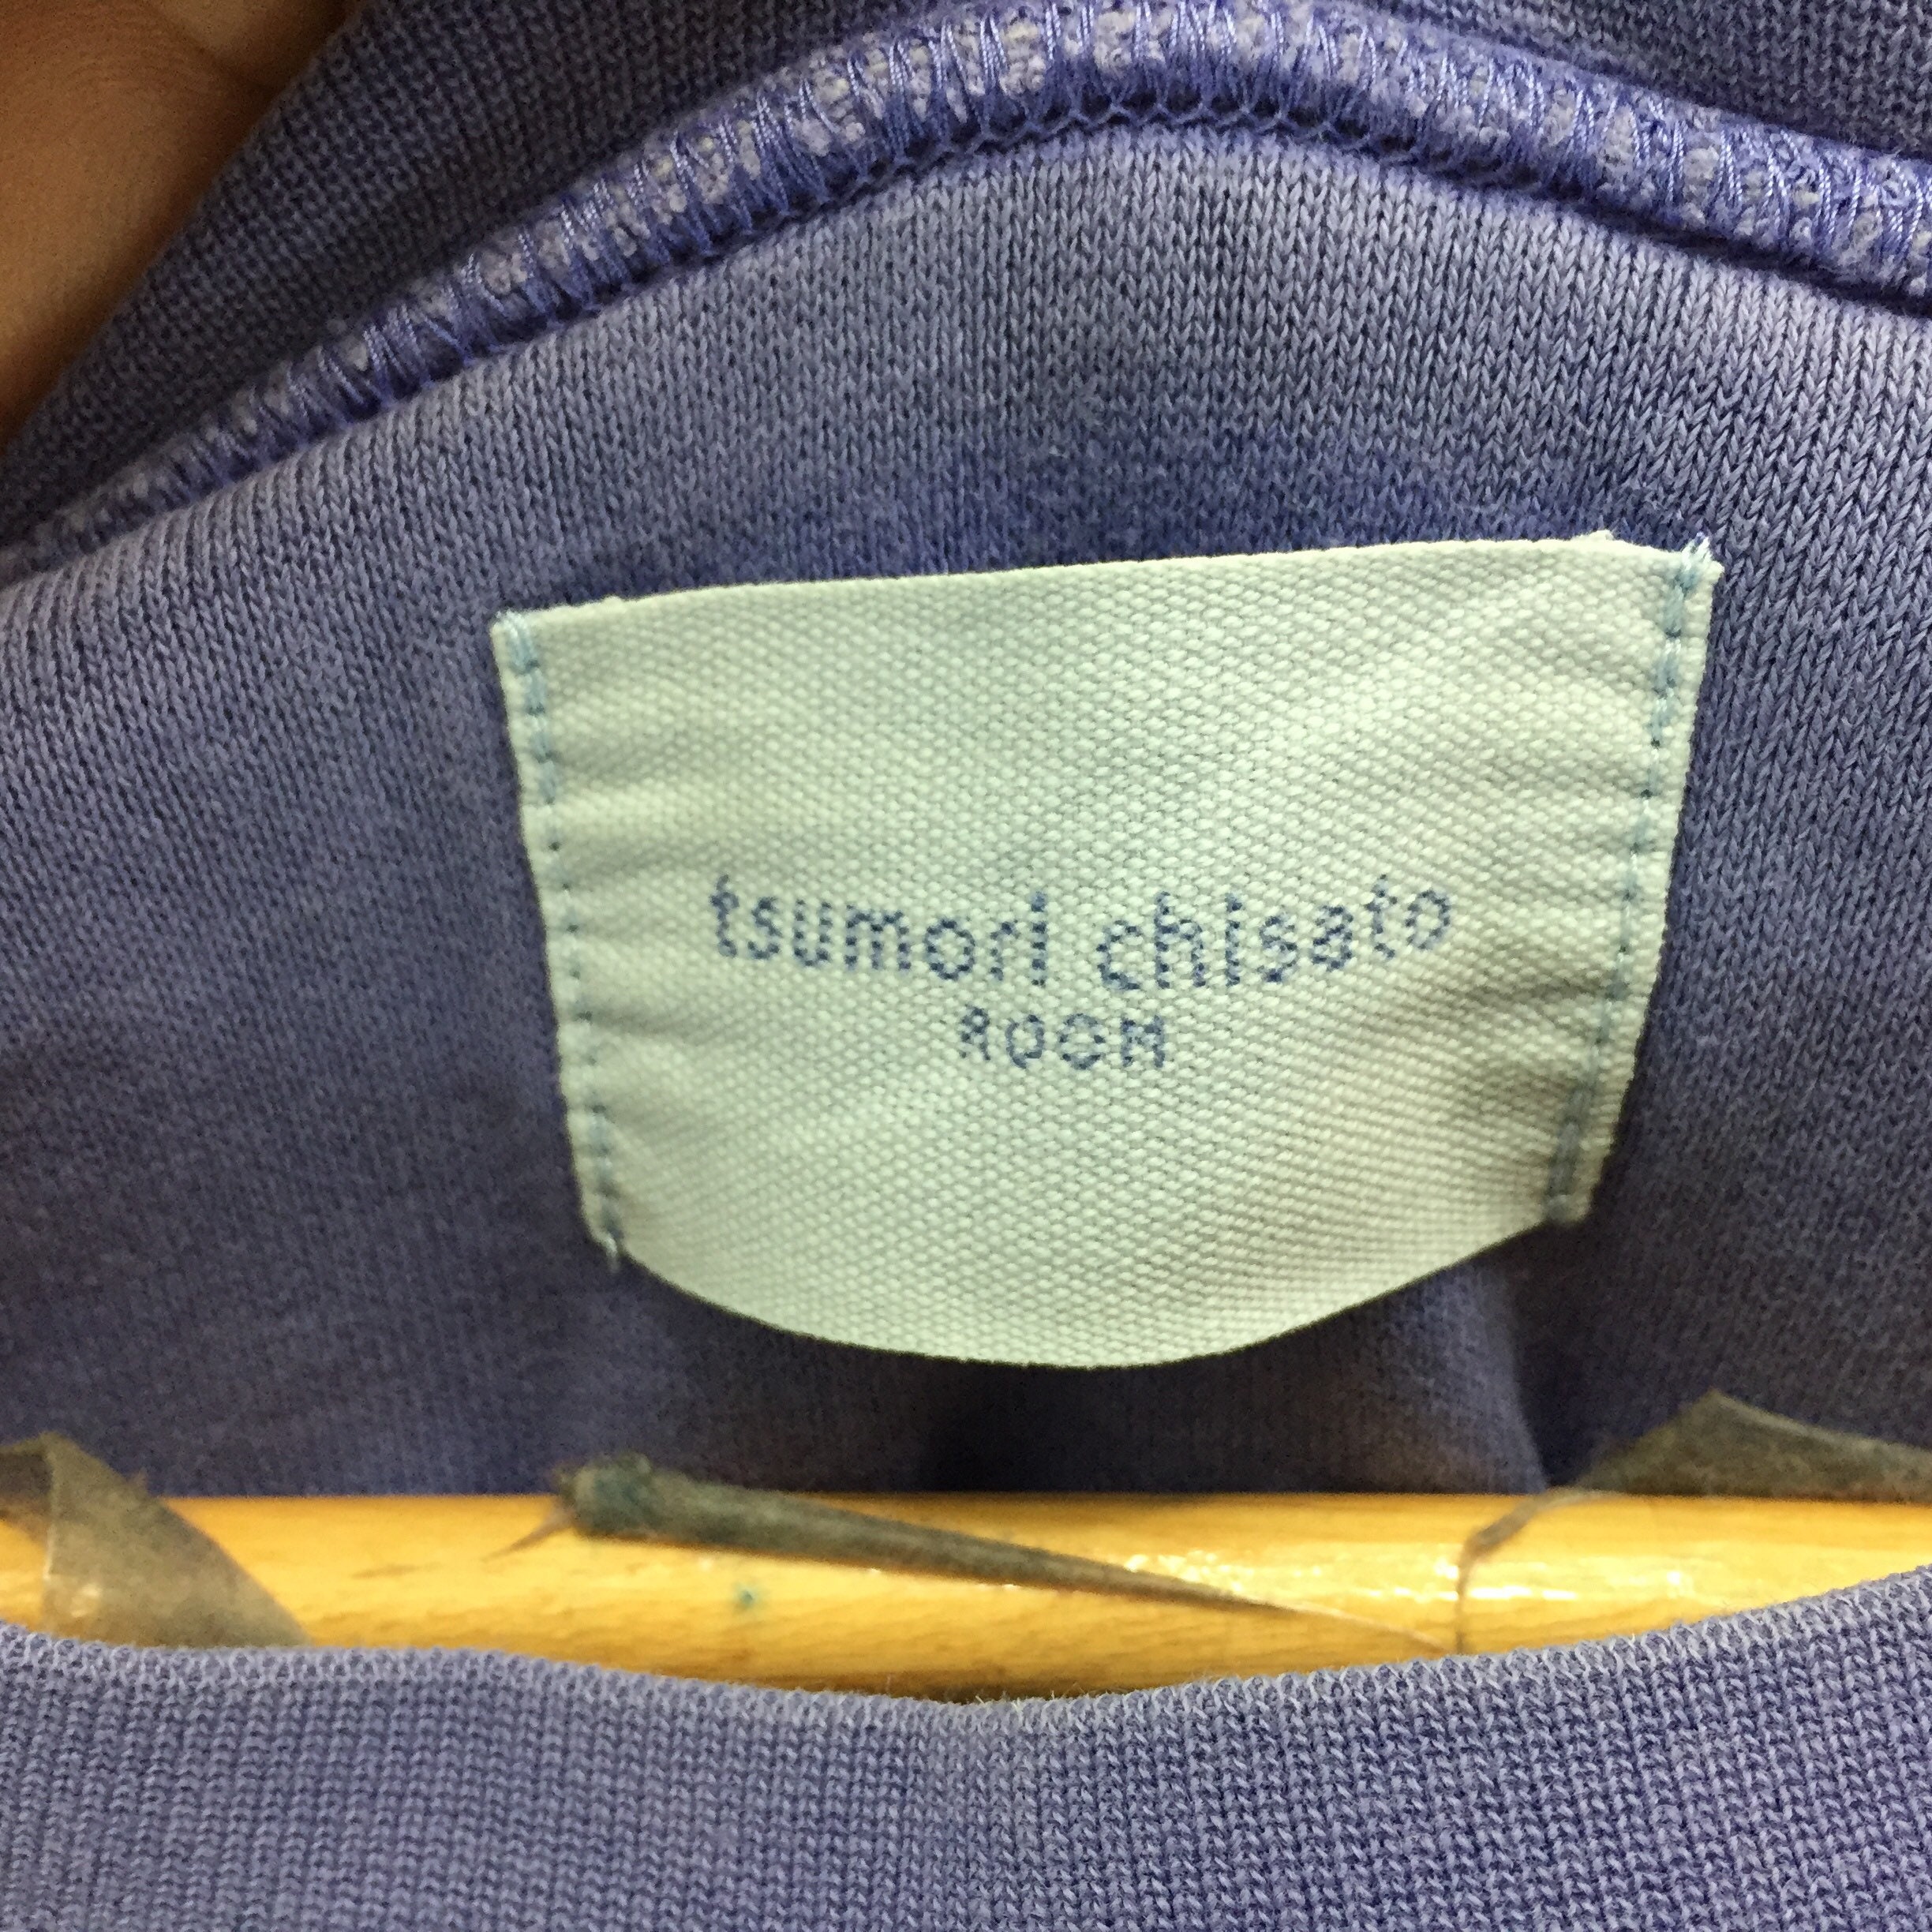 Extremely Rarevintage Tsumori Chisato by Issey Miyake - Etsy